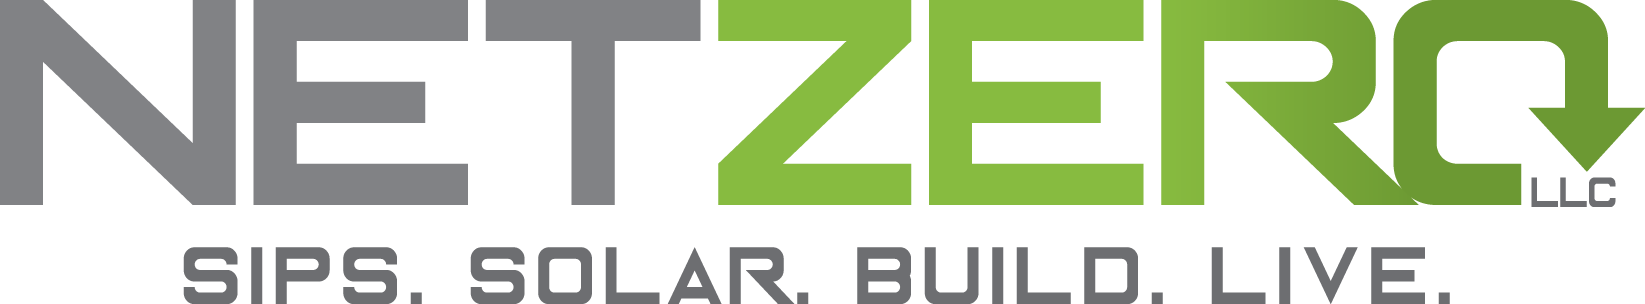 NetZero LLC company logo